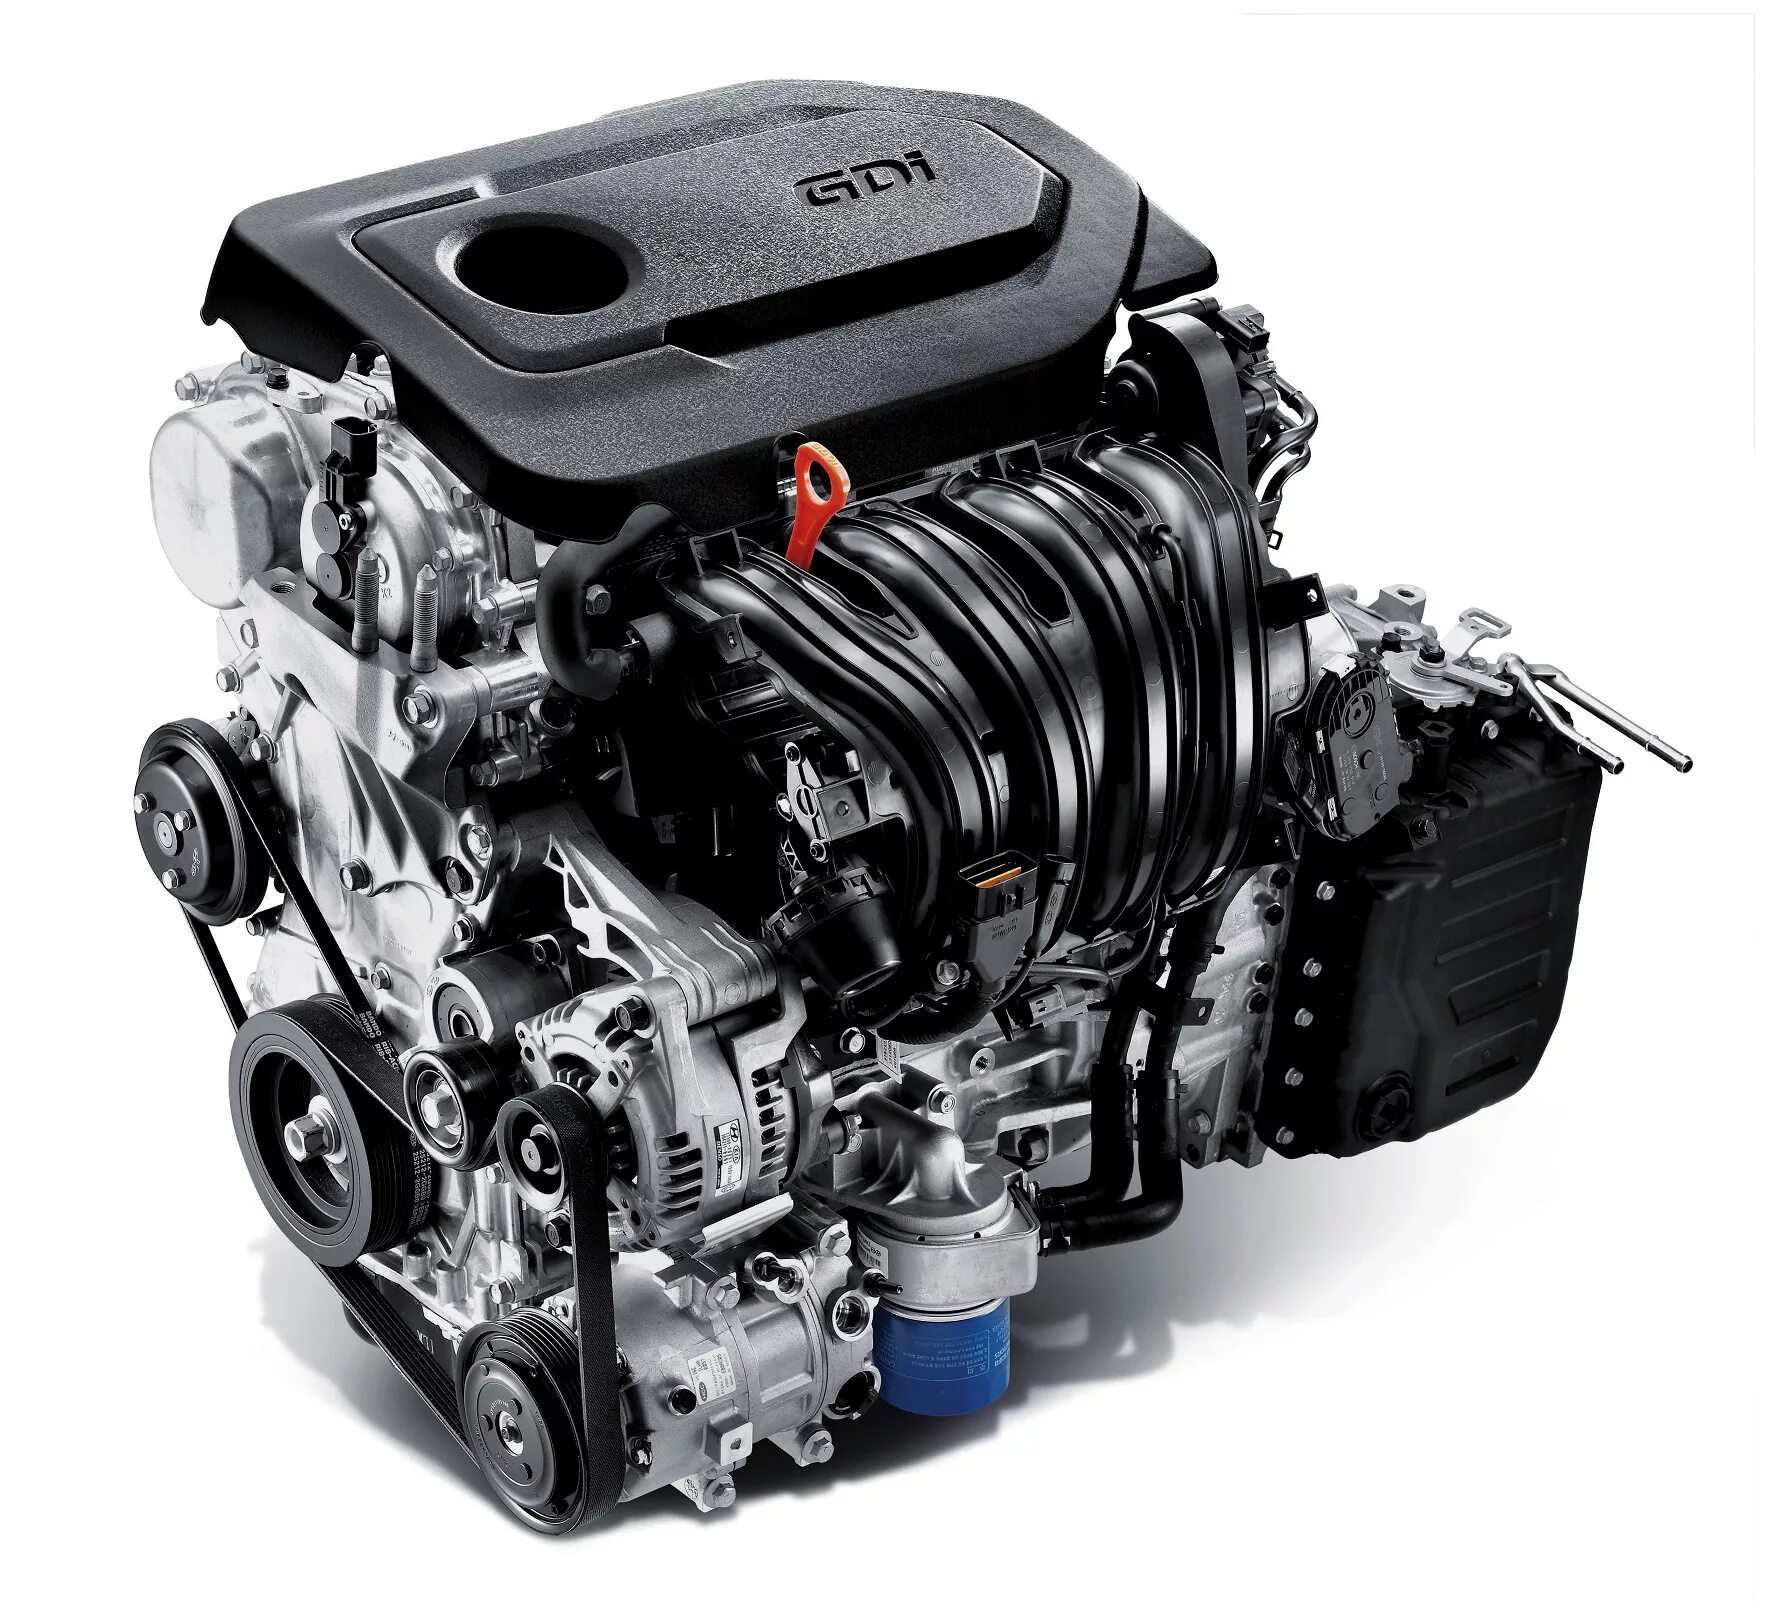 Купить мотор хендай. Соната 2.4 GDI мотор. Двигатель Киа 2.4 GDI. Theta II 2.4L GDI (g4kj). Kia Sportage 2 GDI двигатель.